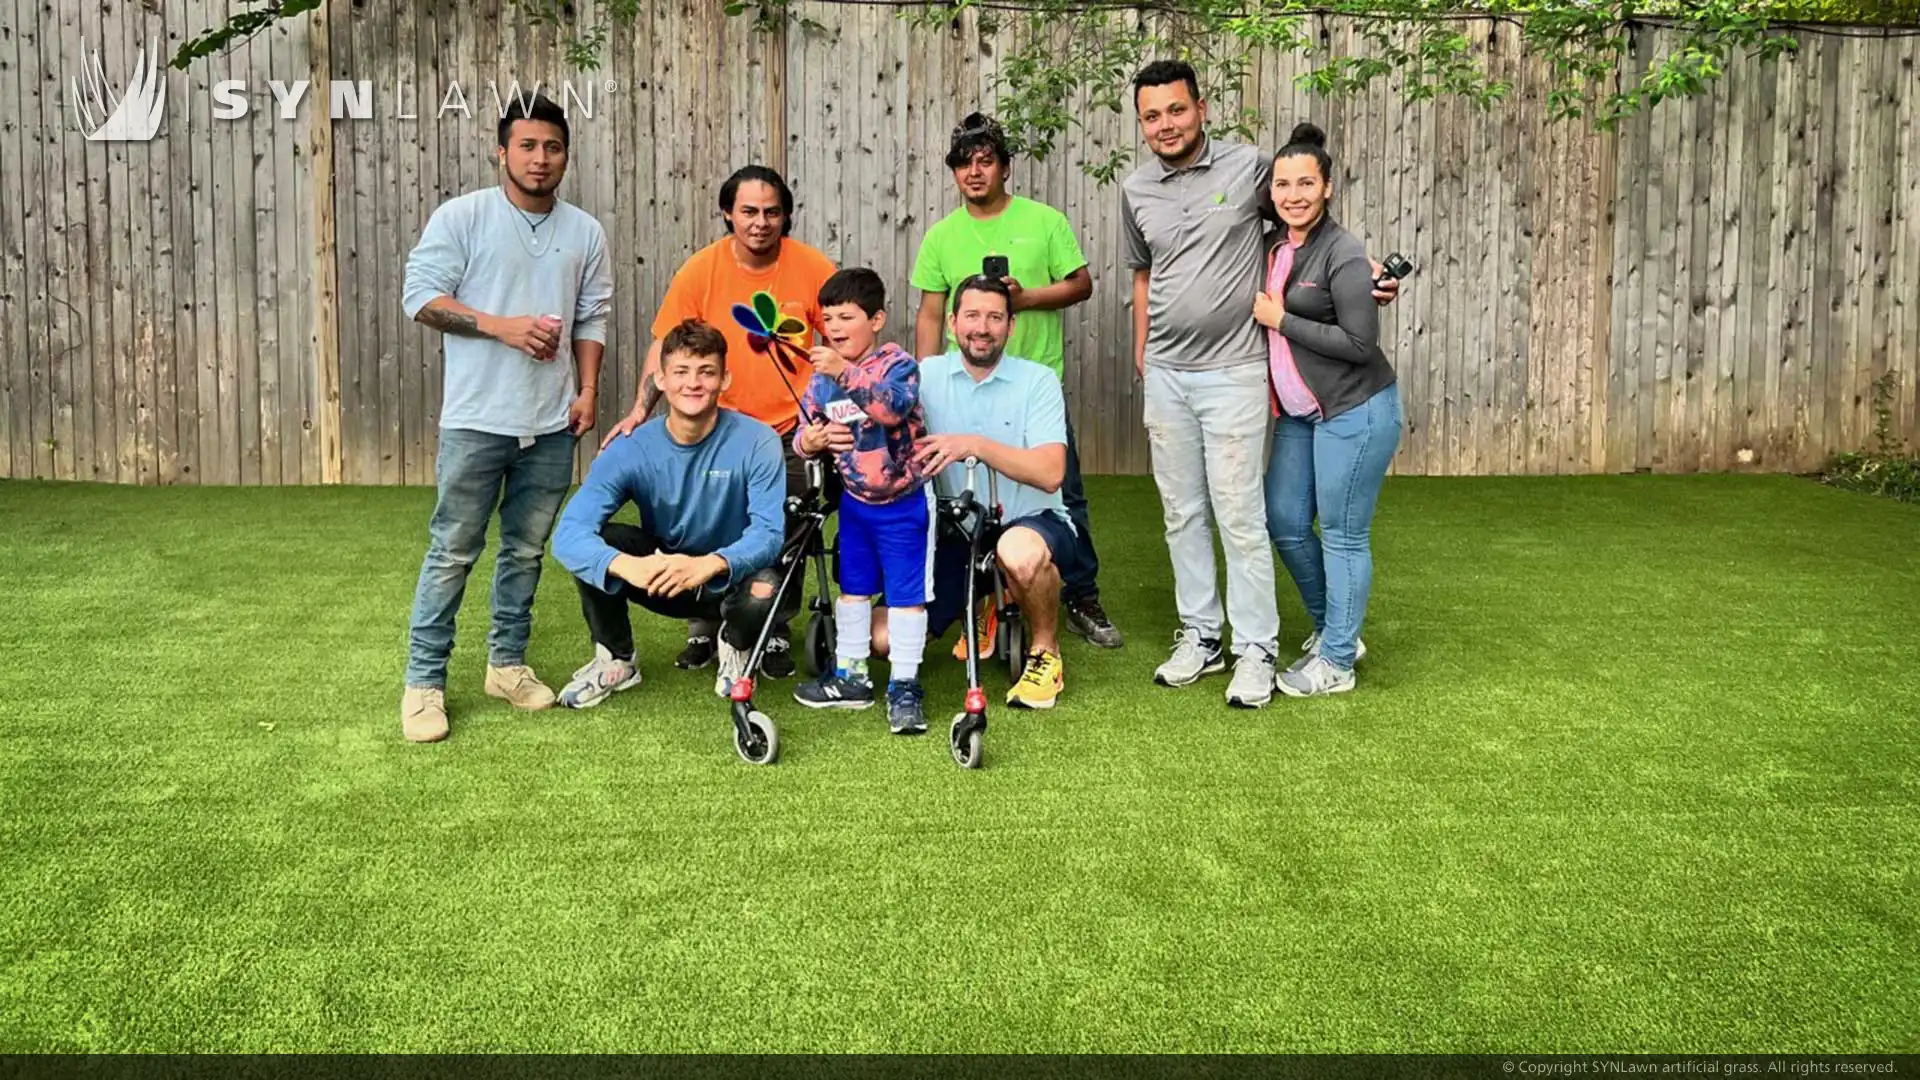 SYNLawn construit une cour de rêve pour une famille faisant un vœu